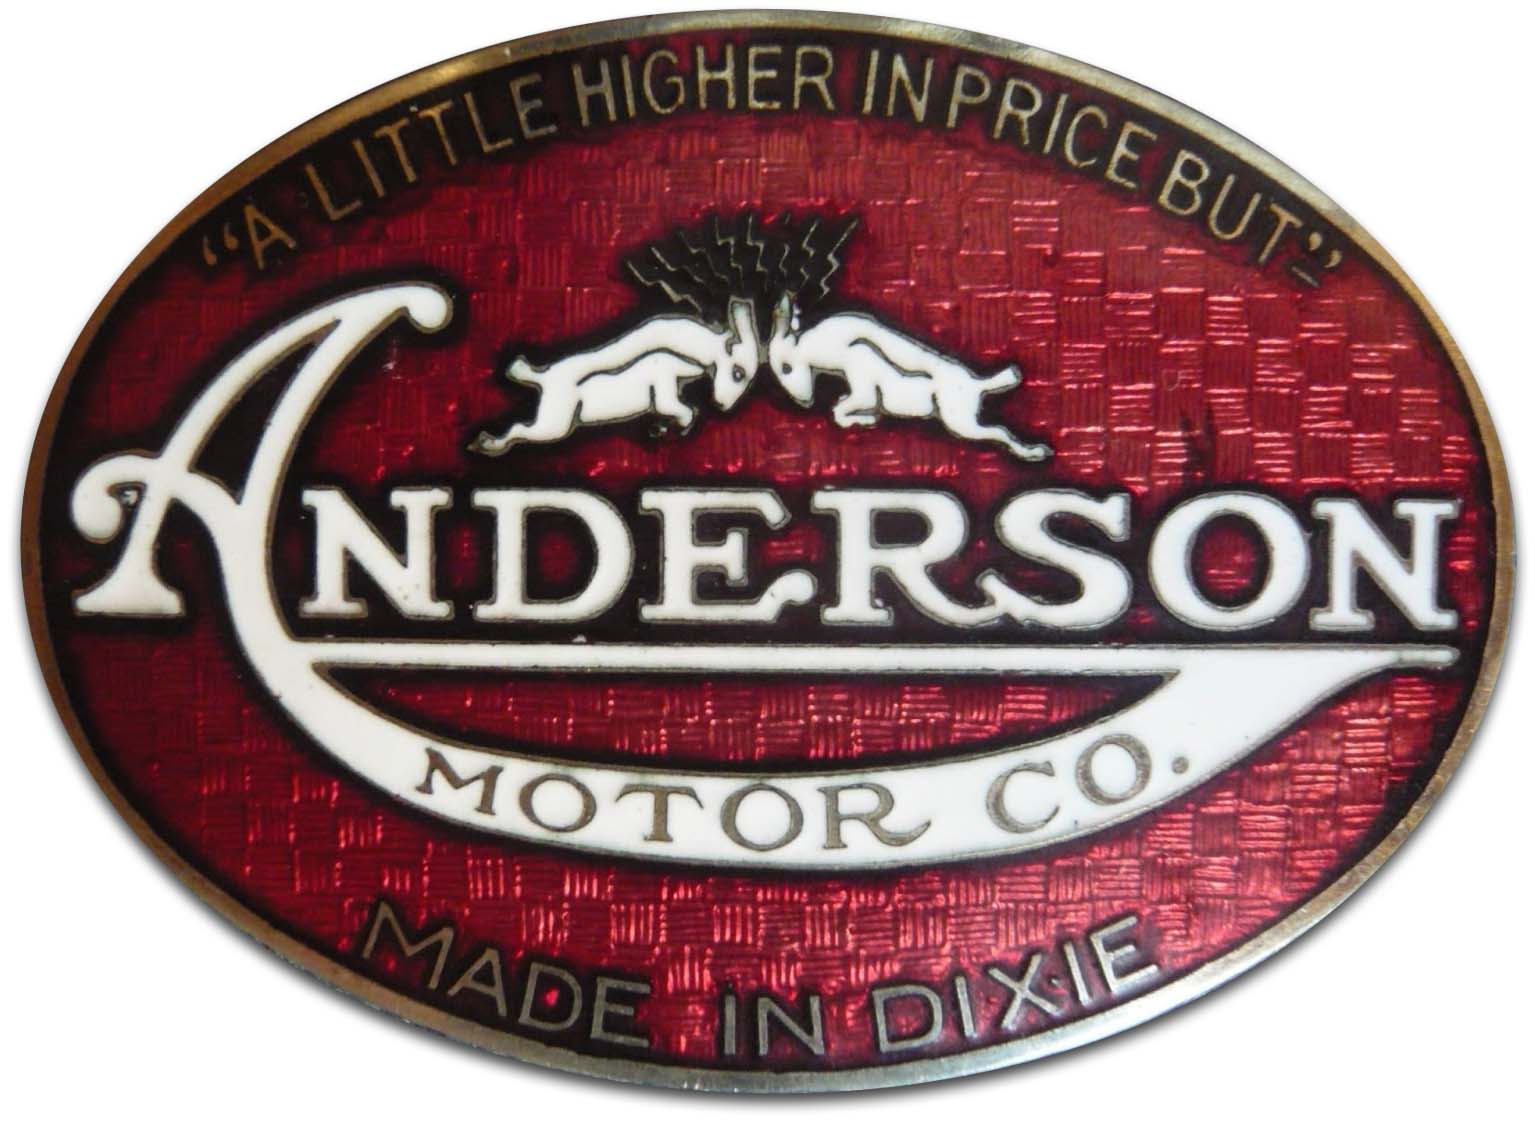 The Anderson Motor Company (Rock Hill, South Carolina)(1925)